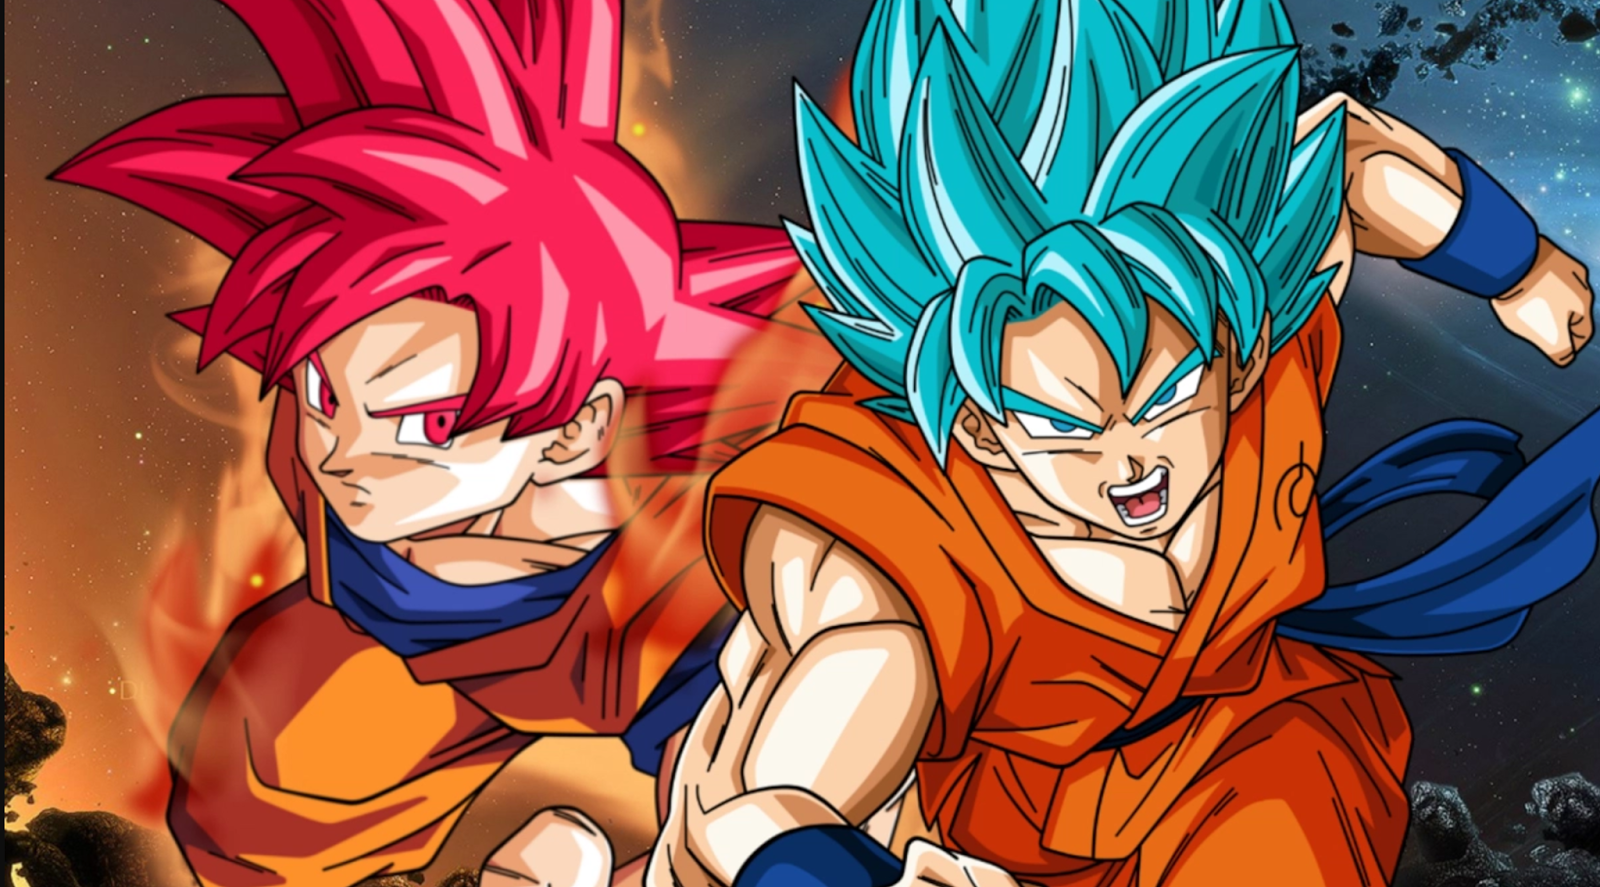 Goku vs bills pelea completa en HD YouTube - Dragon Ball Z Goku Versus Bills